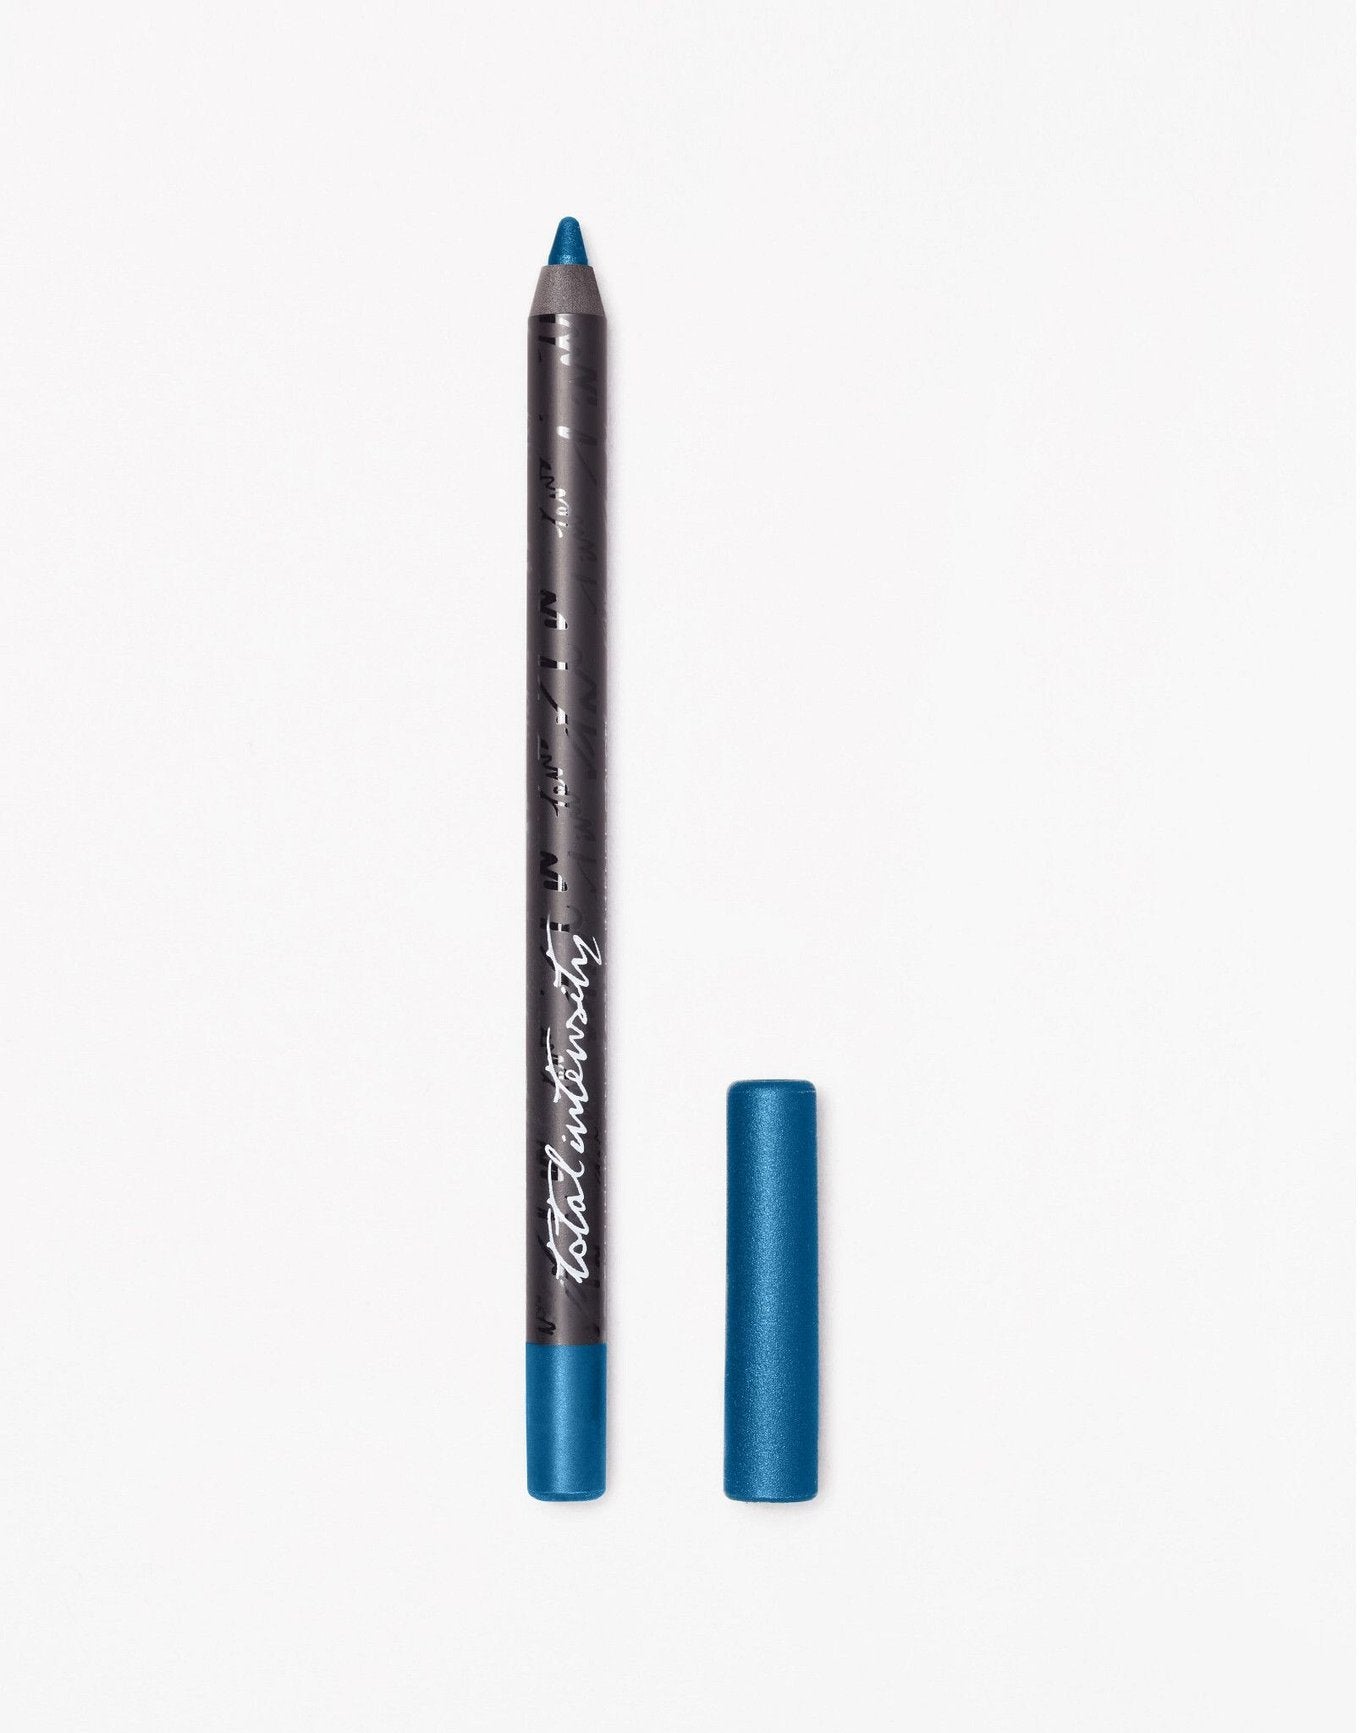 Intense Color Eyeliner Pencil Liner Cosmetics